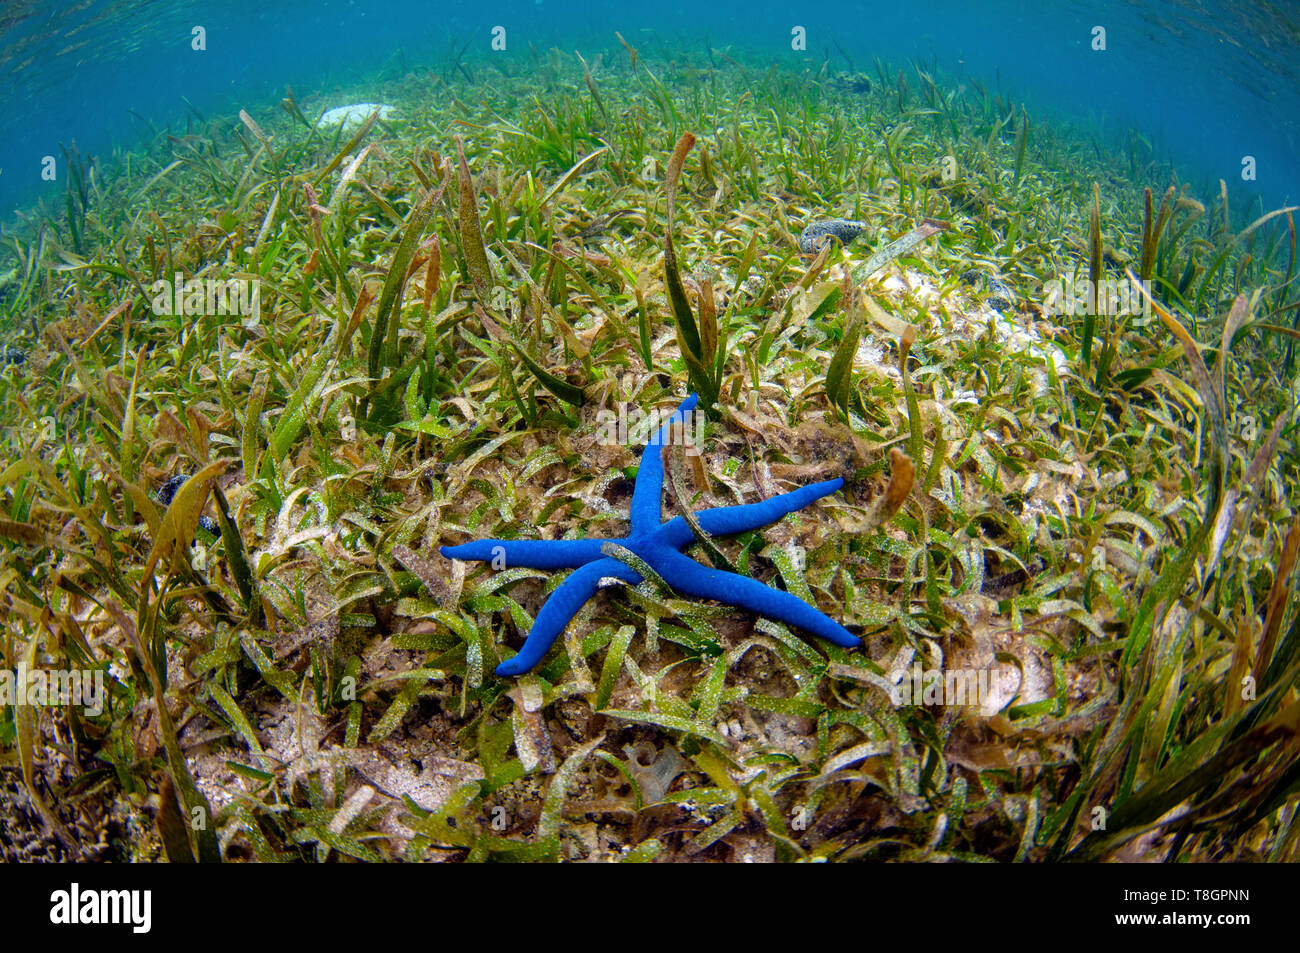 Blue sea star, Linckia laevigata, sur un lit d'herbes marines, Pohnpei, États fédérés de Micronésie Banque D'Images